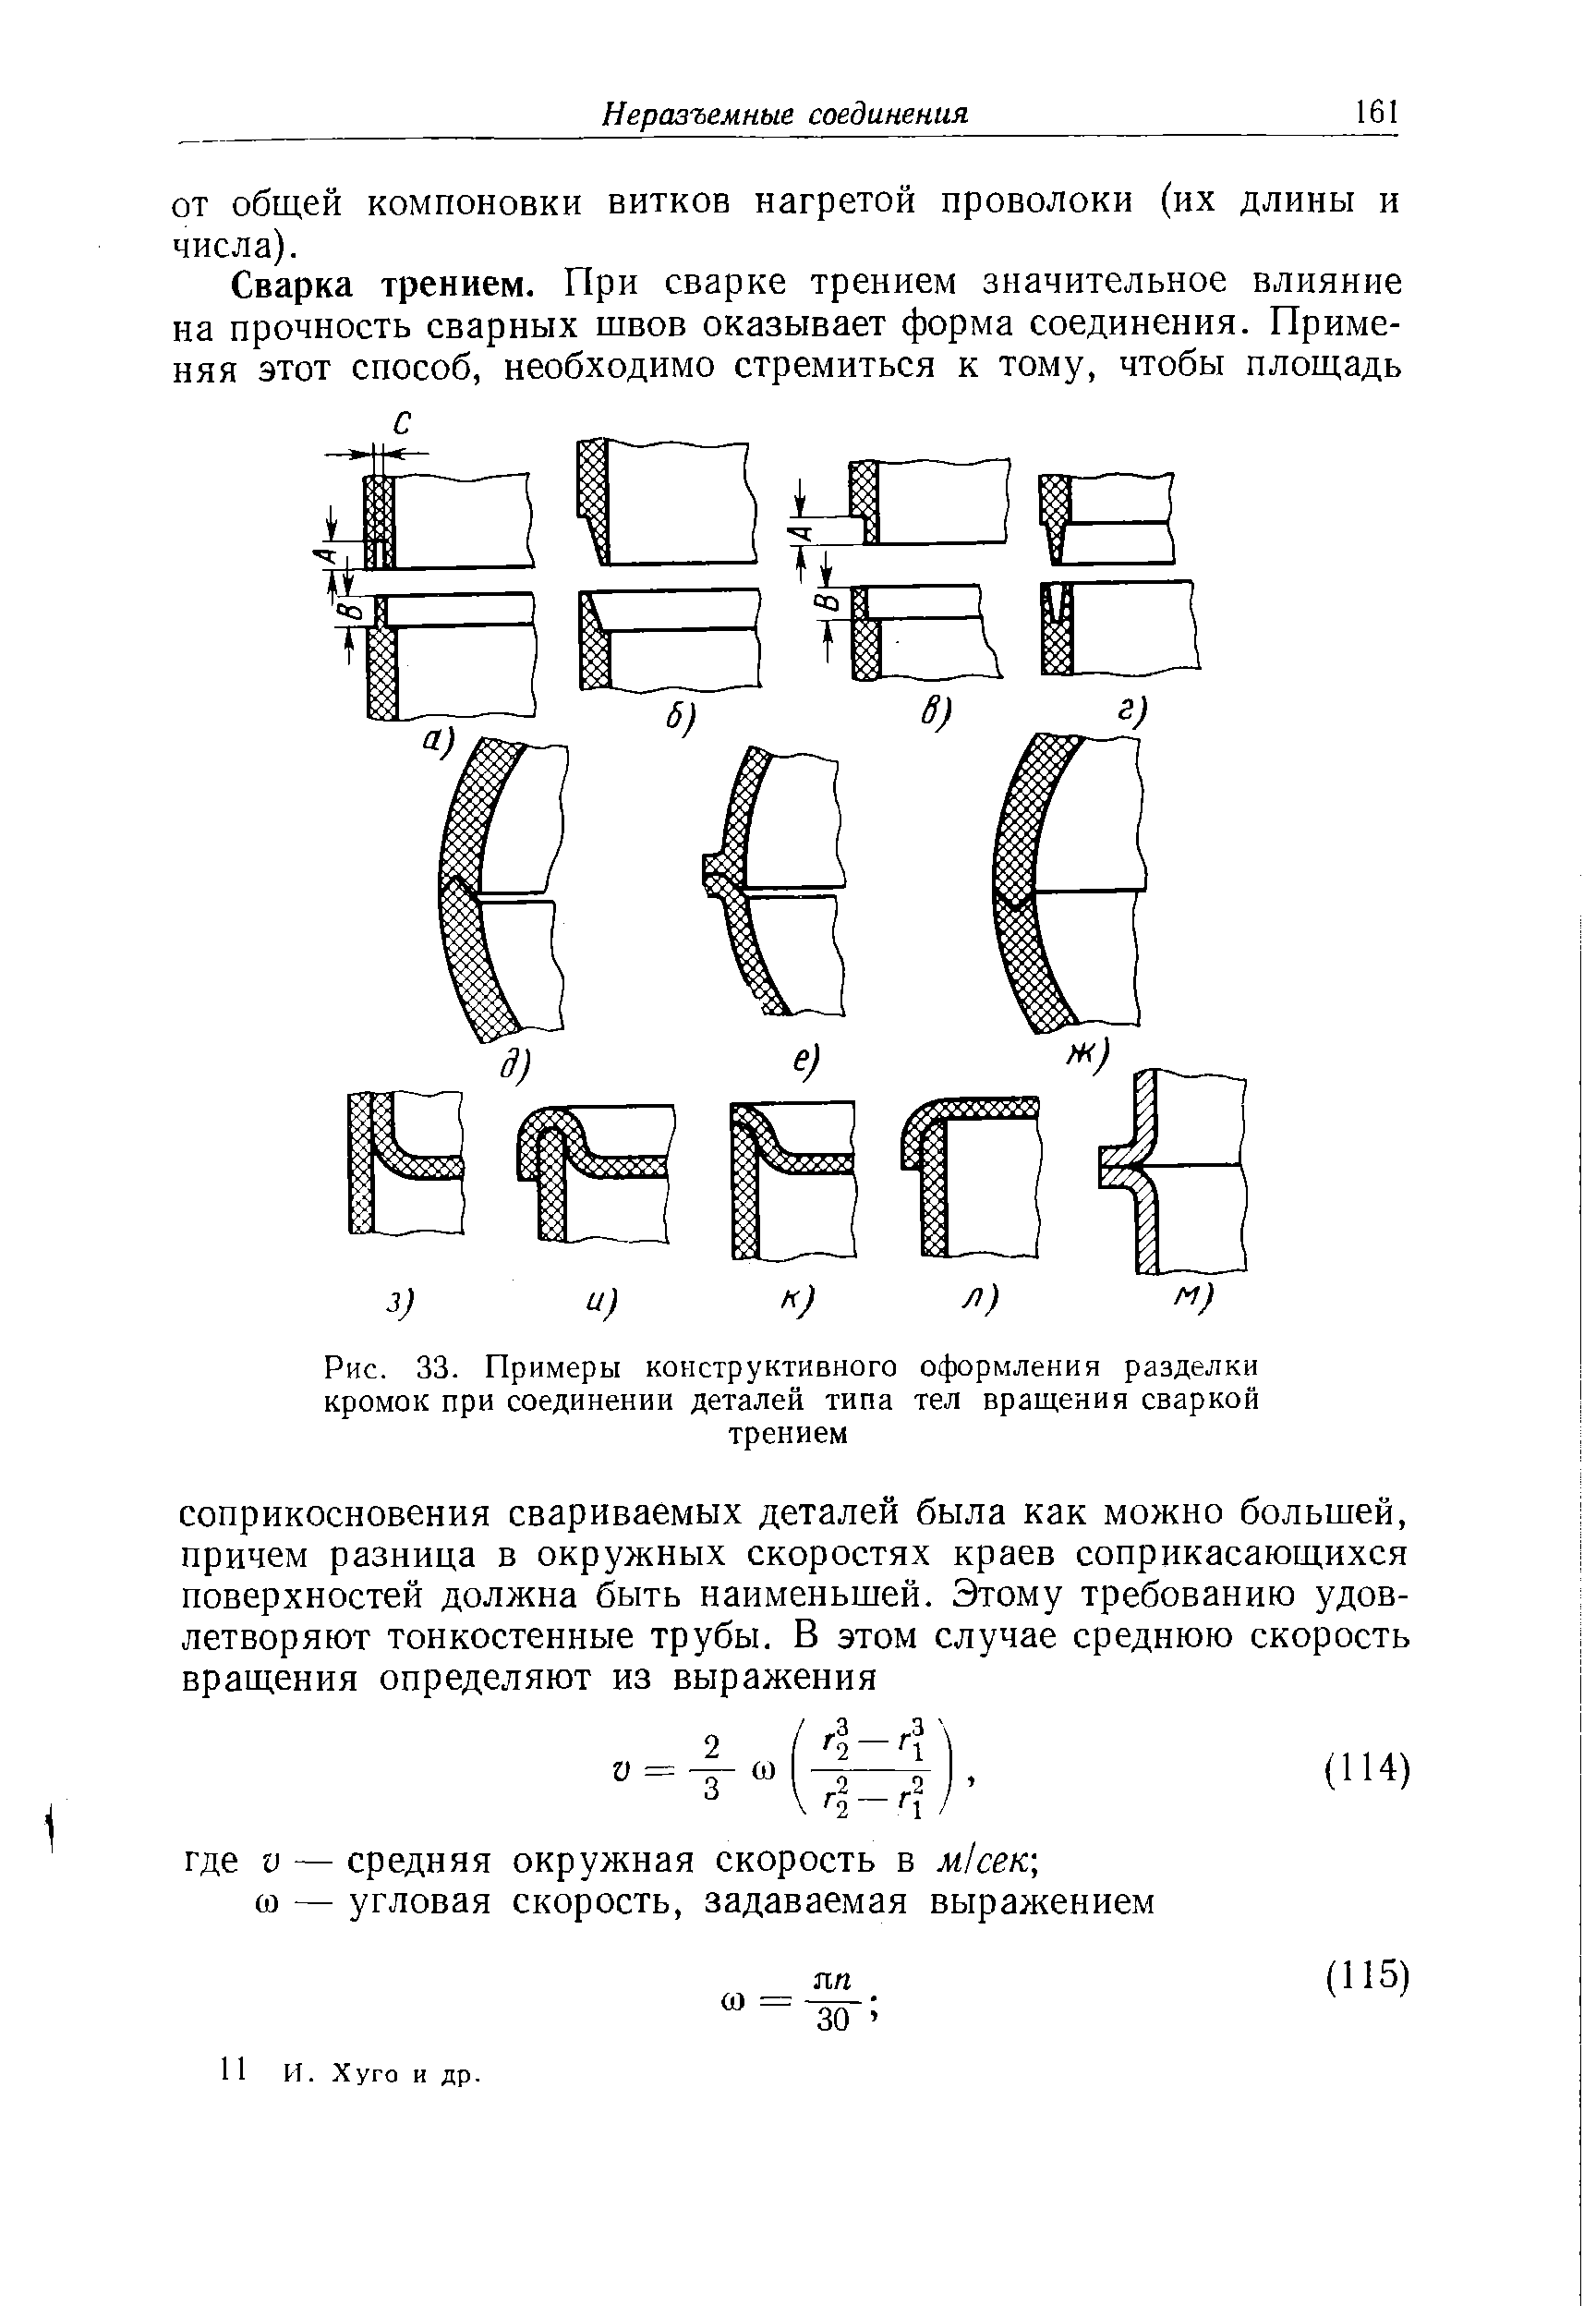 Рис. 33. Примеры конструктивного оформления разделки кромок при соединении деталей типа тел вращения сваркой трением
